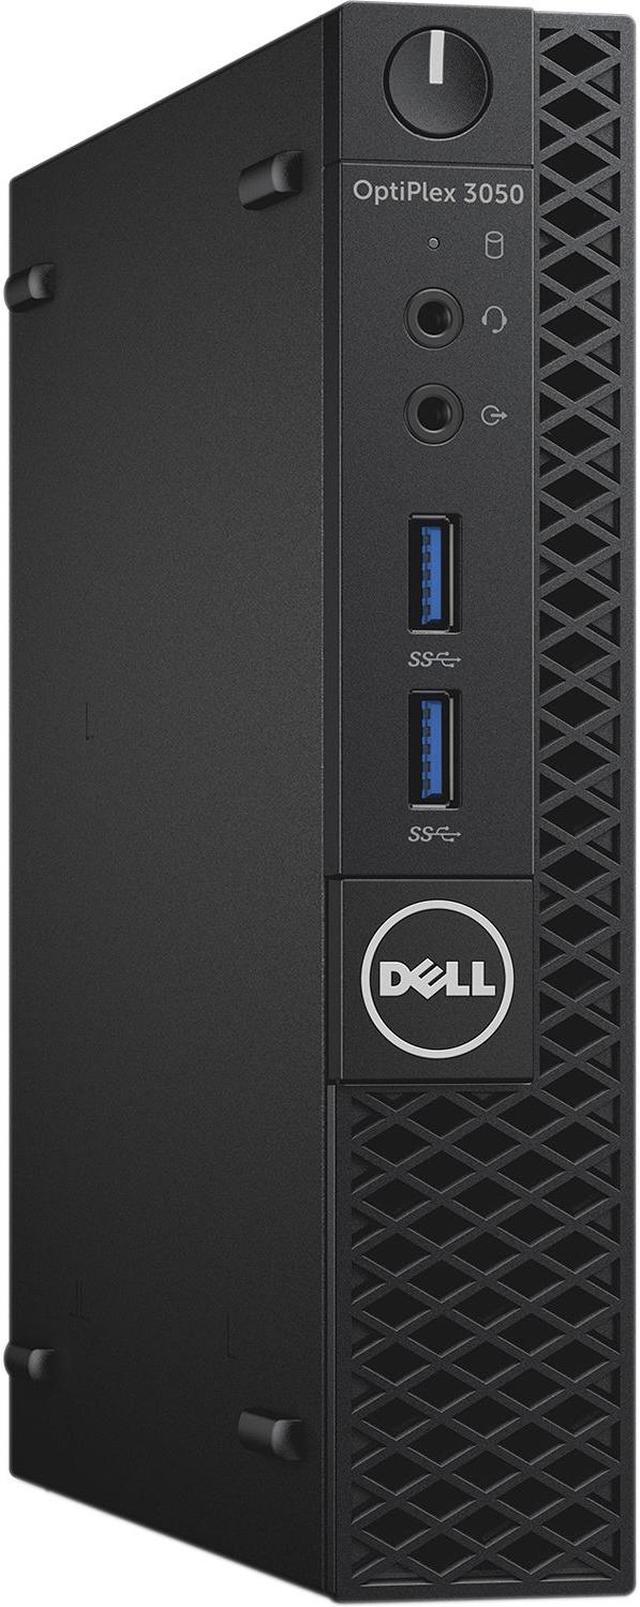 Refurbished: Dell Optiplex 3050 Intel Core i5-6500T X4 2.5GHz 8GB